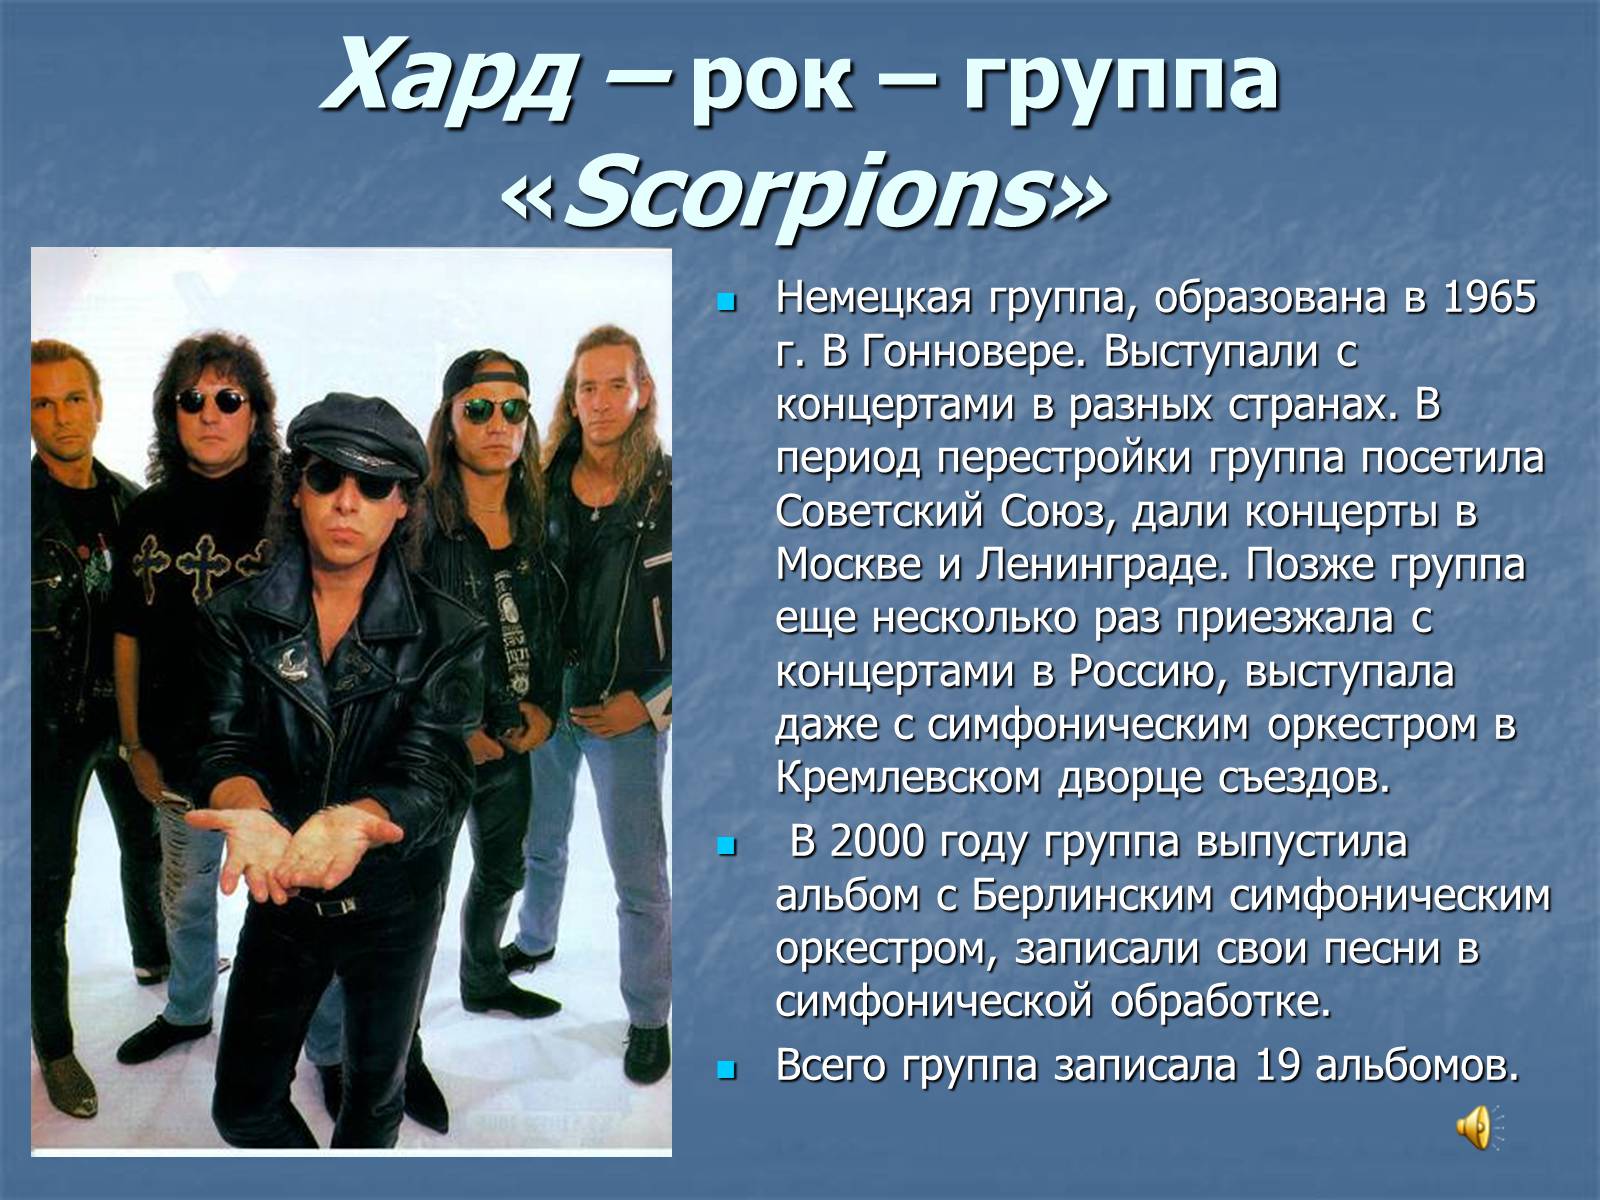 Сообщение о любимой группе. Группа скорпионс 1965. Презентация на тему рок. Презентация на тему рок группа. Доклад про рок группу.